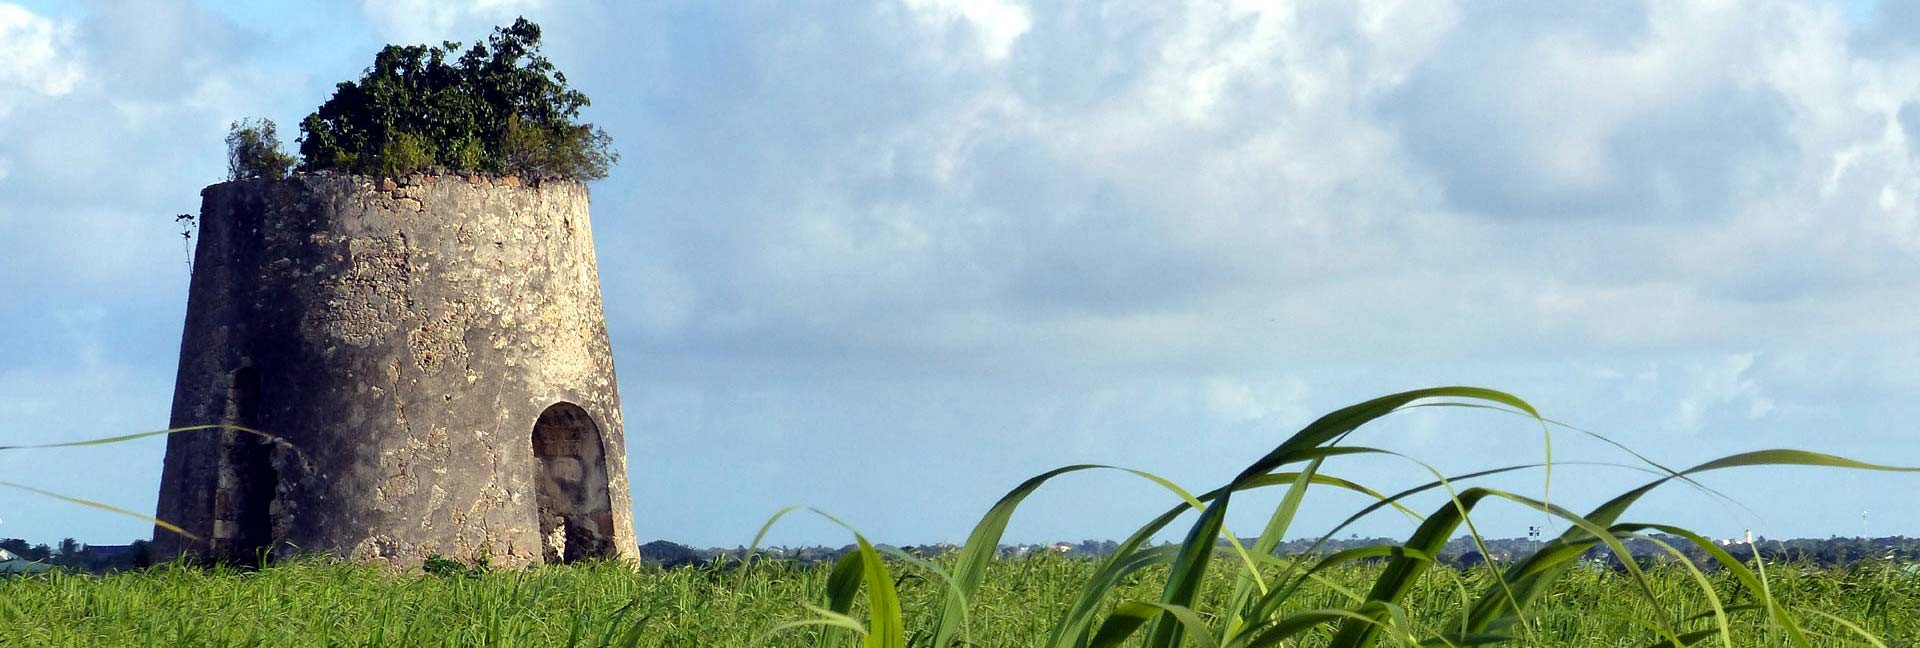 Ancien moulin dans un champ de cannes à sucre aux Antilles